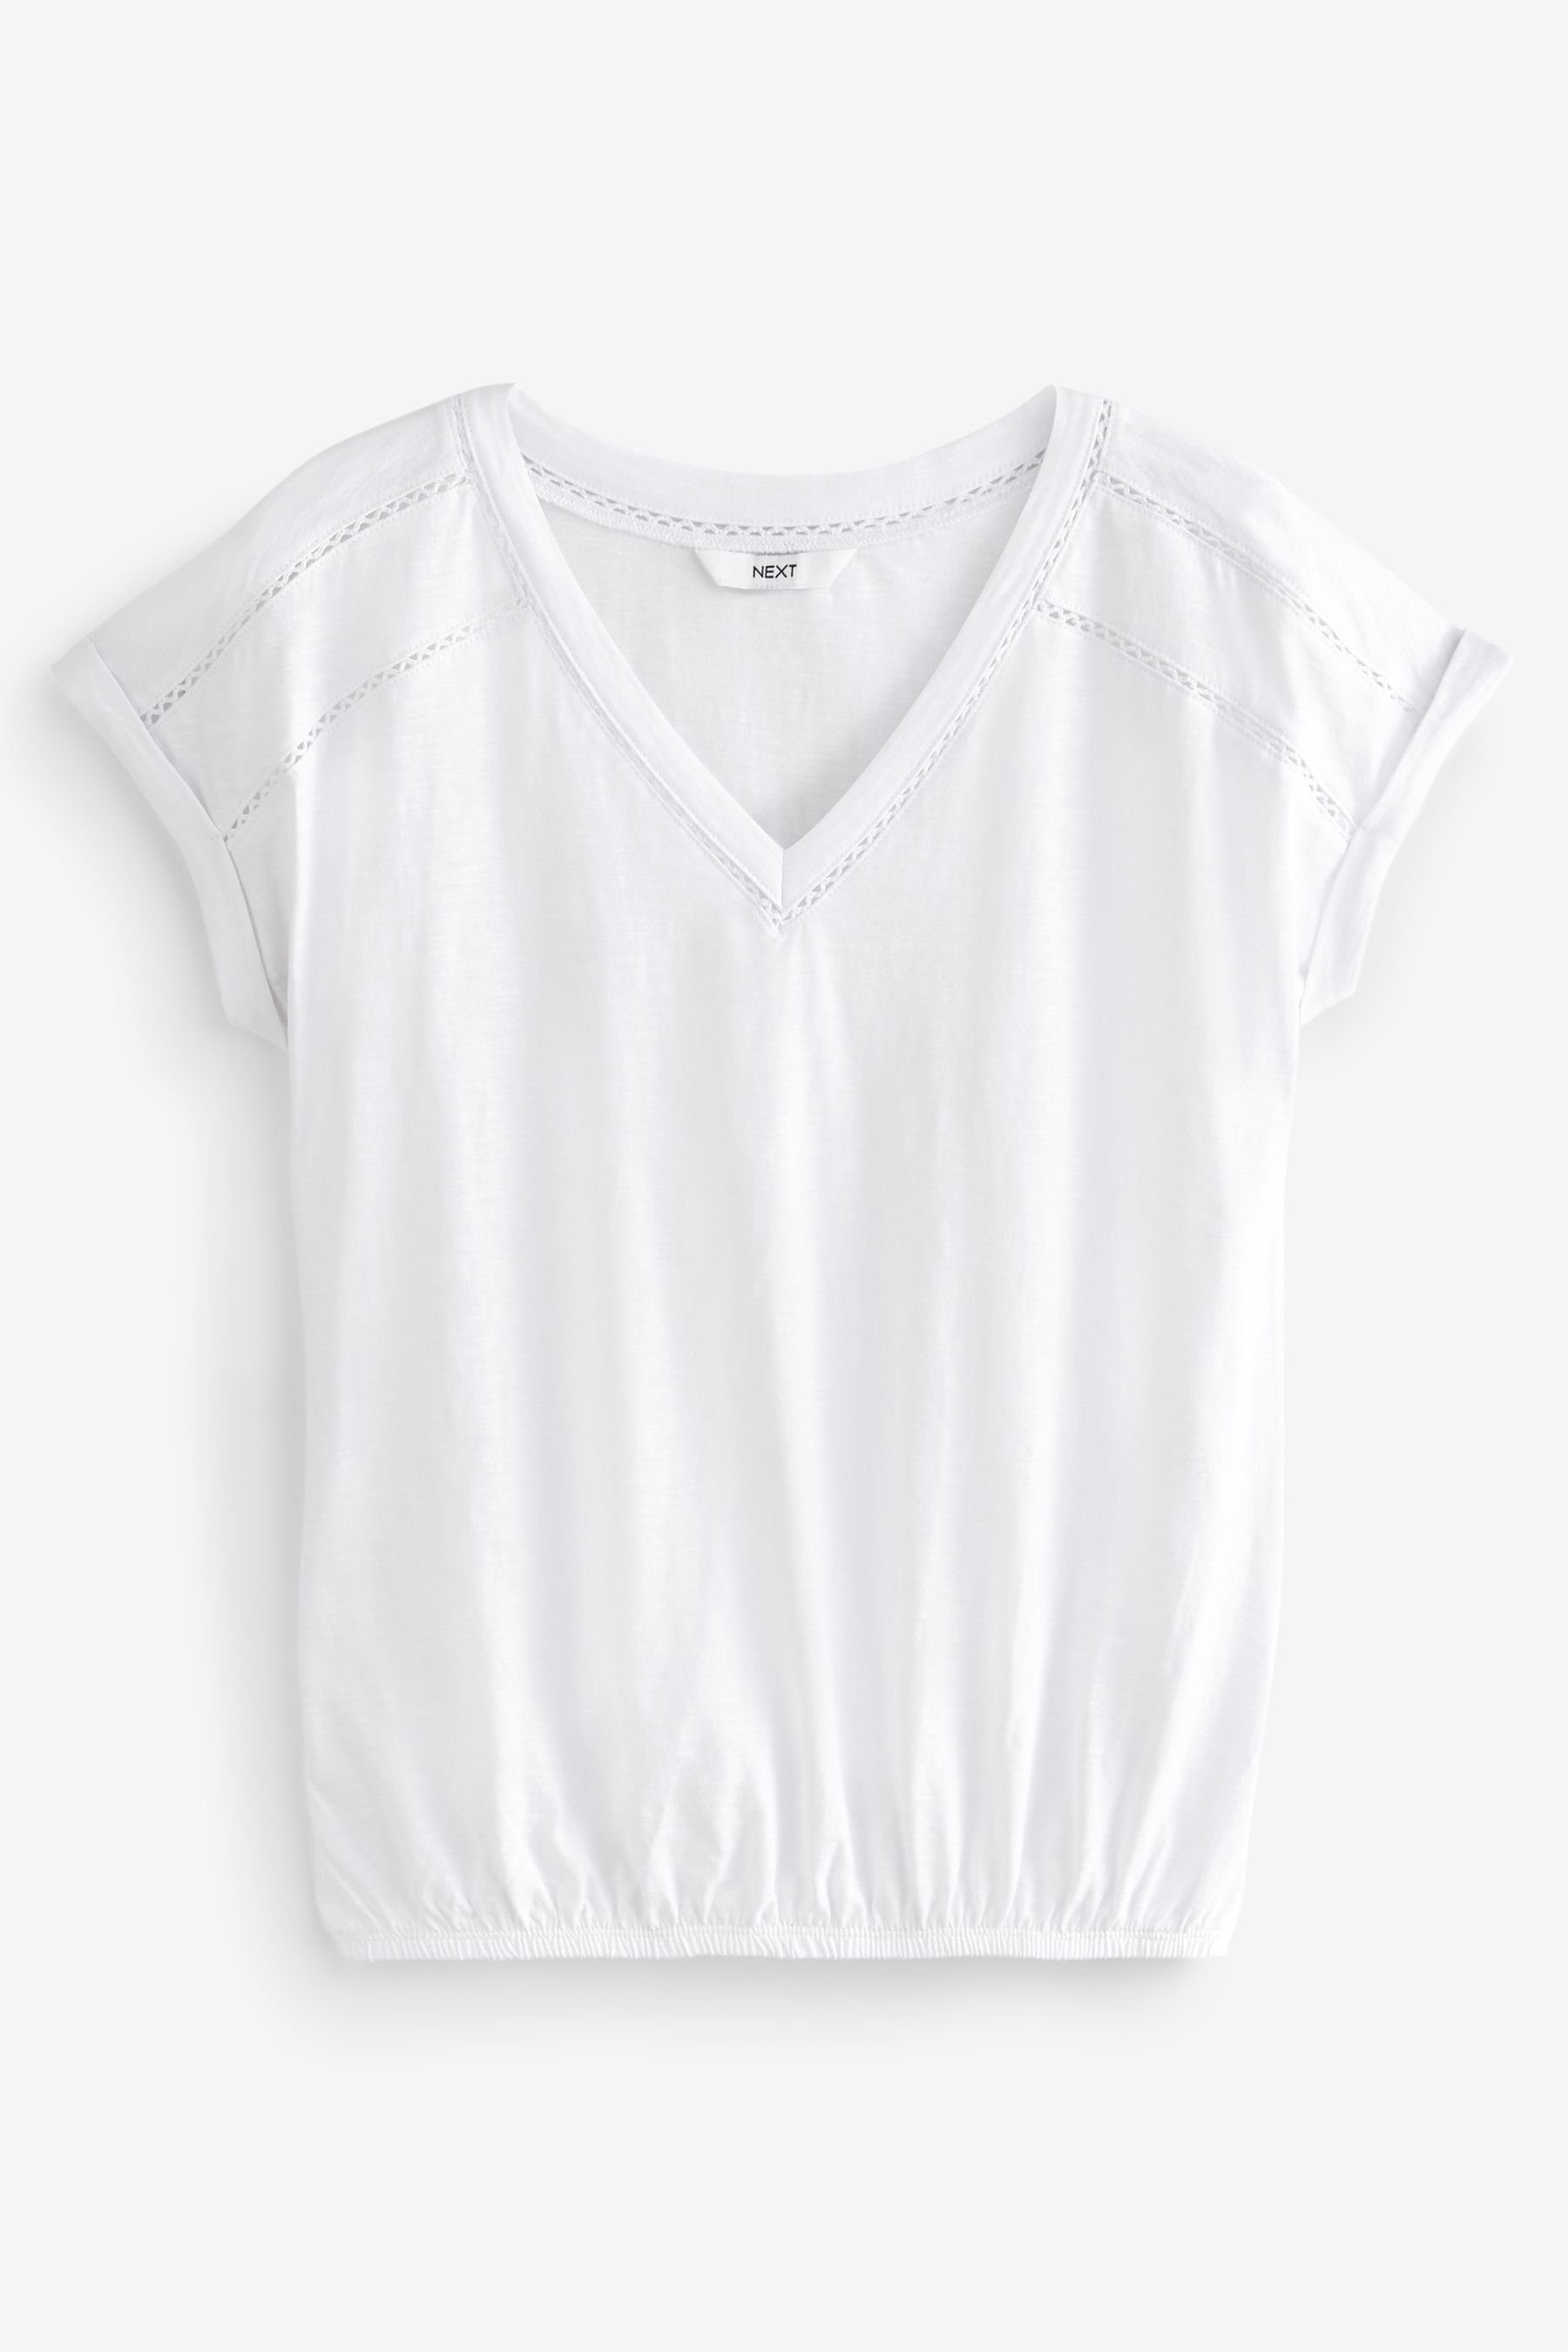 Ballonsaum Next und White Top V-Ausschnitt (1-tlg) mit T-Shirt